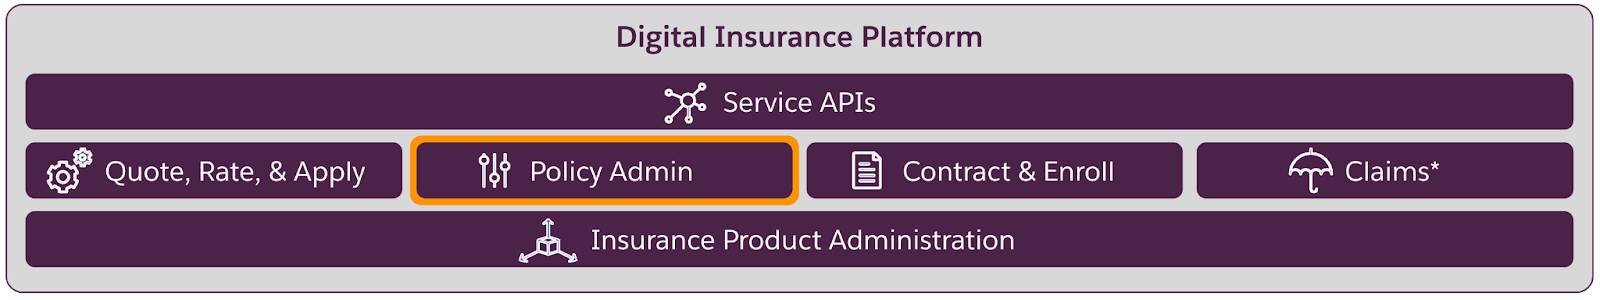 デジタル保険プラットフォームを構成するコンポーネントの階層。最下層に保険商品管理、中間層に保険モジュール、最上層にサービス API が配置されている。